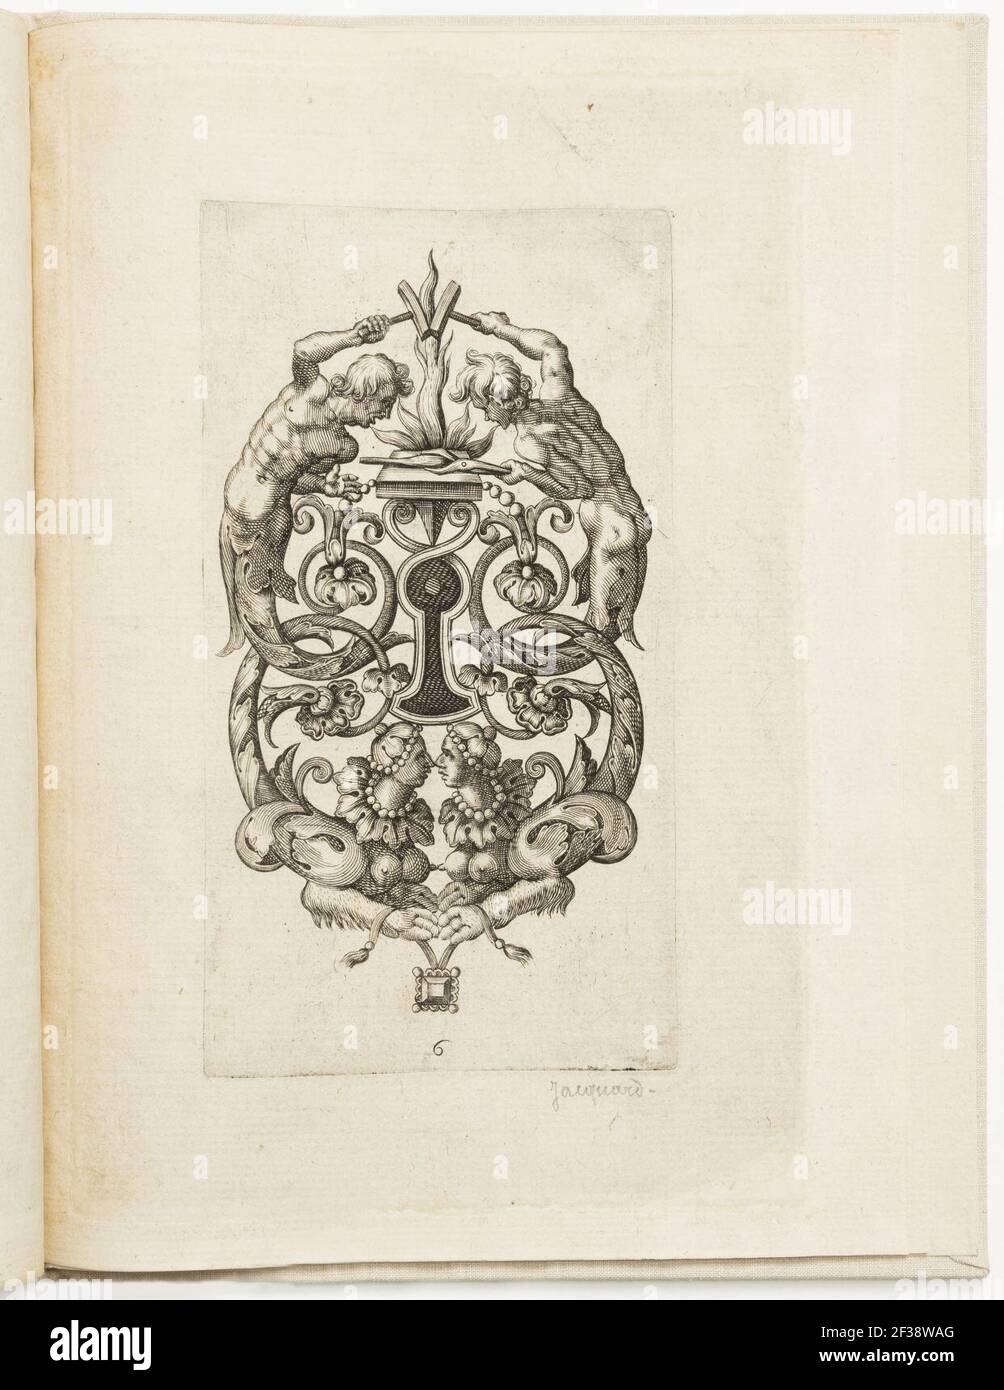 Druck, Platte 6, von Différens portraitz pour les serruriers nouvellement inventez (Neuerfindung für Schlosser), 1616 Stockfoto